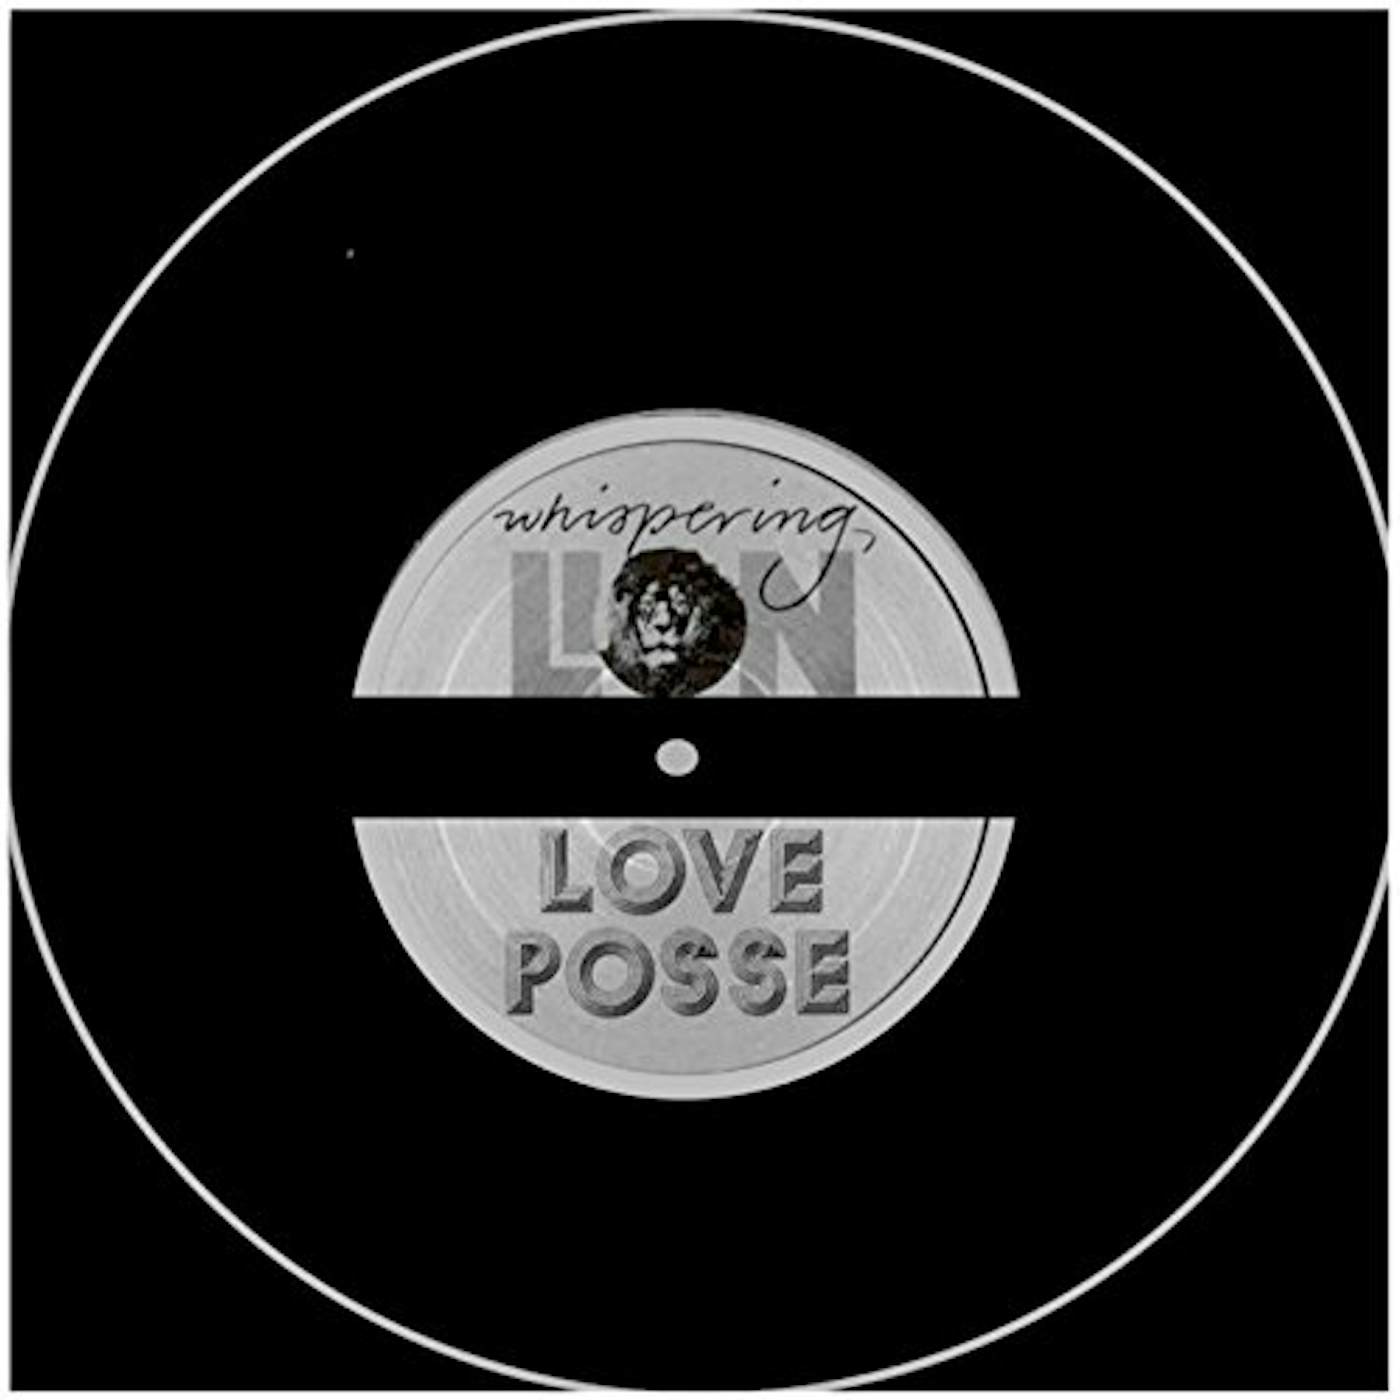 Whispering Lion Love Posse Vinyl Record